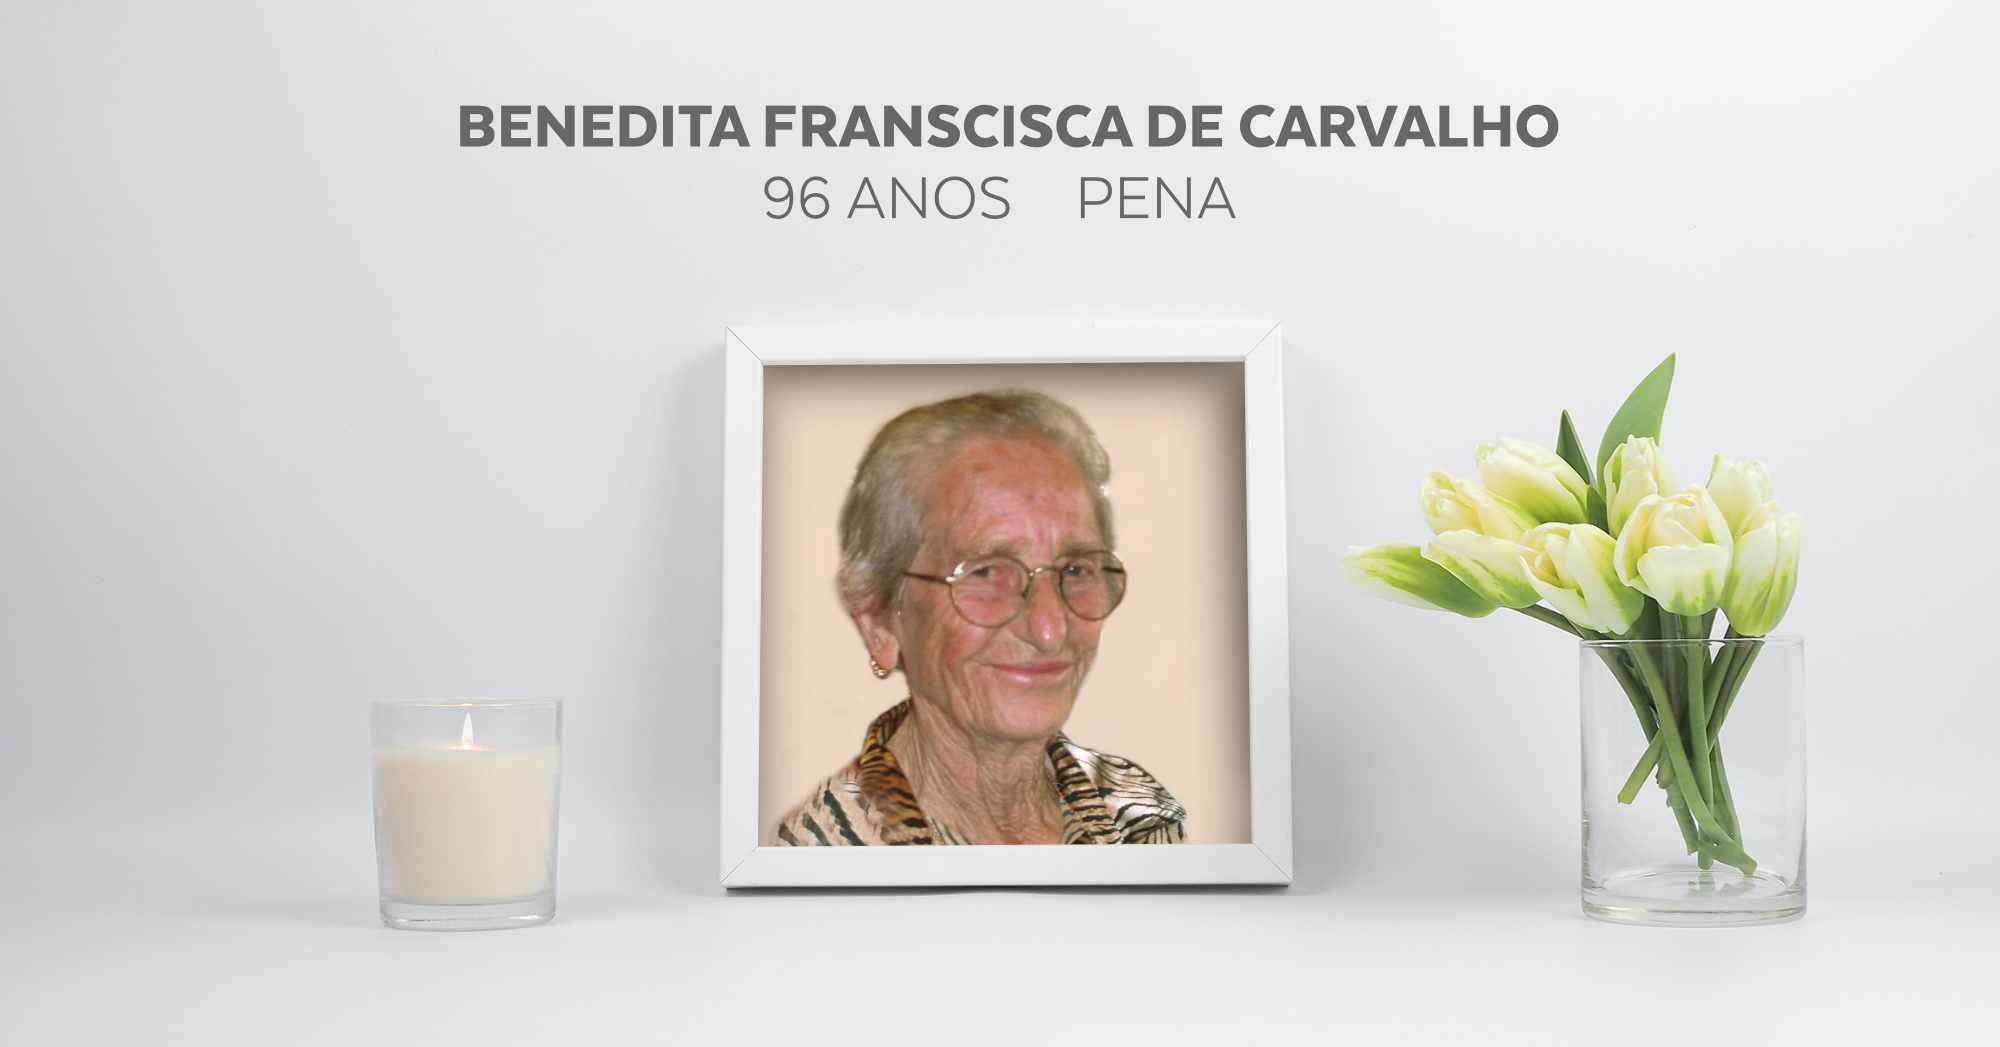 Benedita Francisca de Carvalho